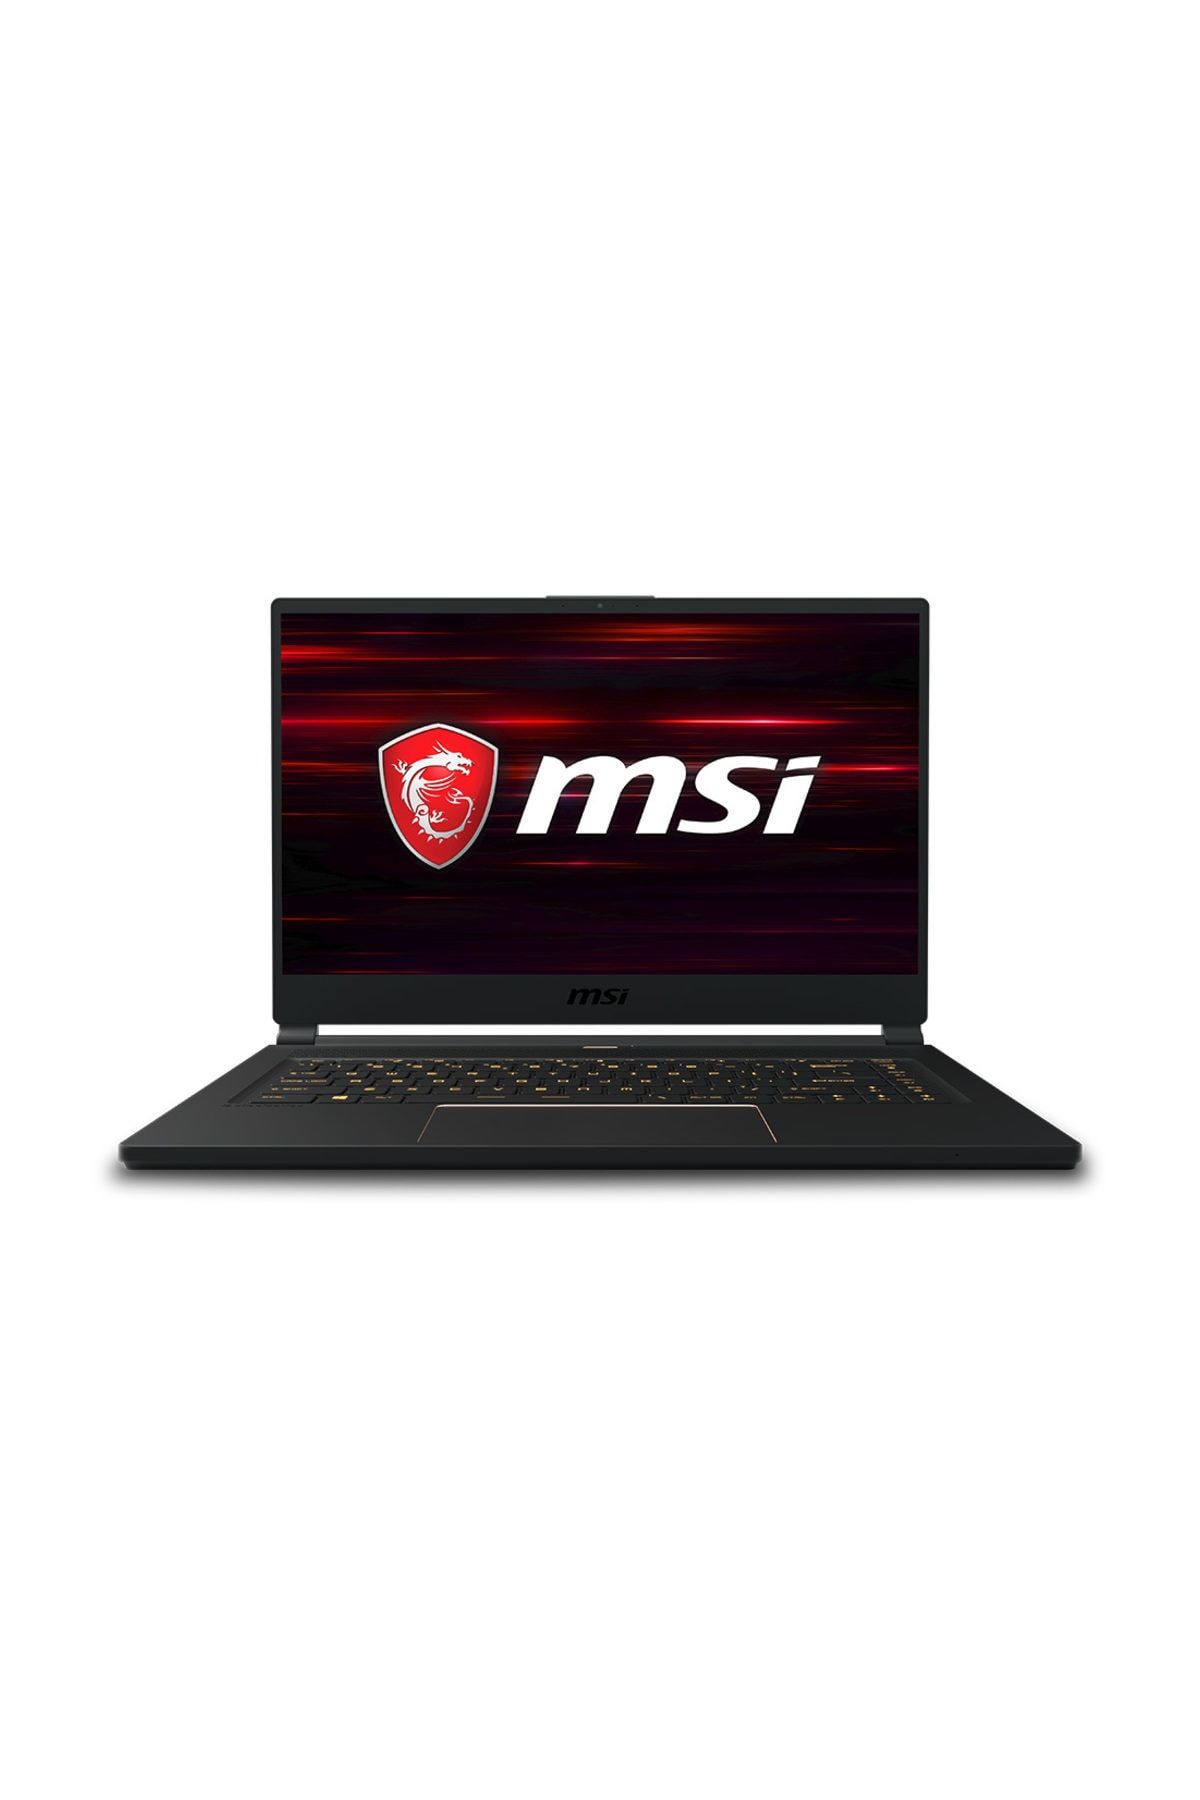 MSI GS65 Stealth 9SE-655TR Intel Core i7 9750H 16GB 256GB SSD RTX2060 Windows 10 Home 15.6" FHD